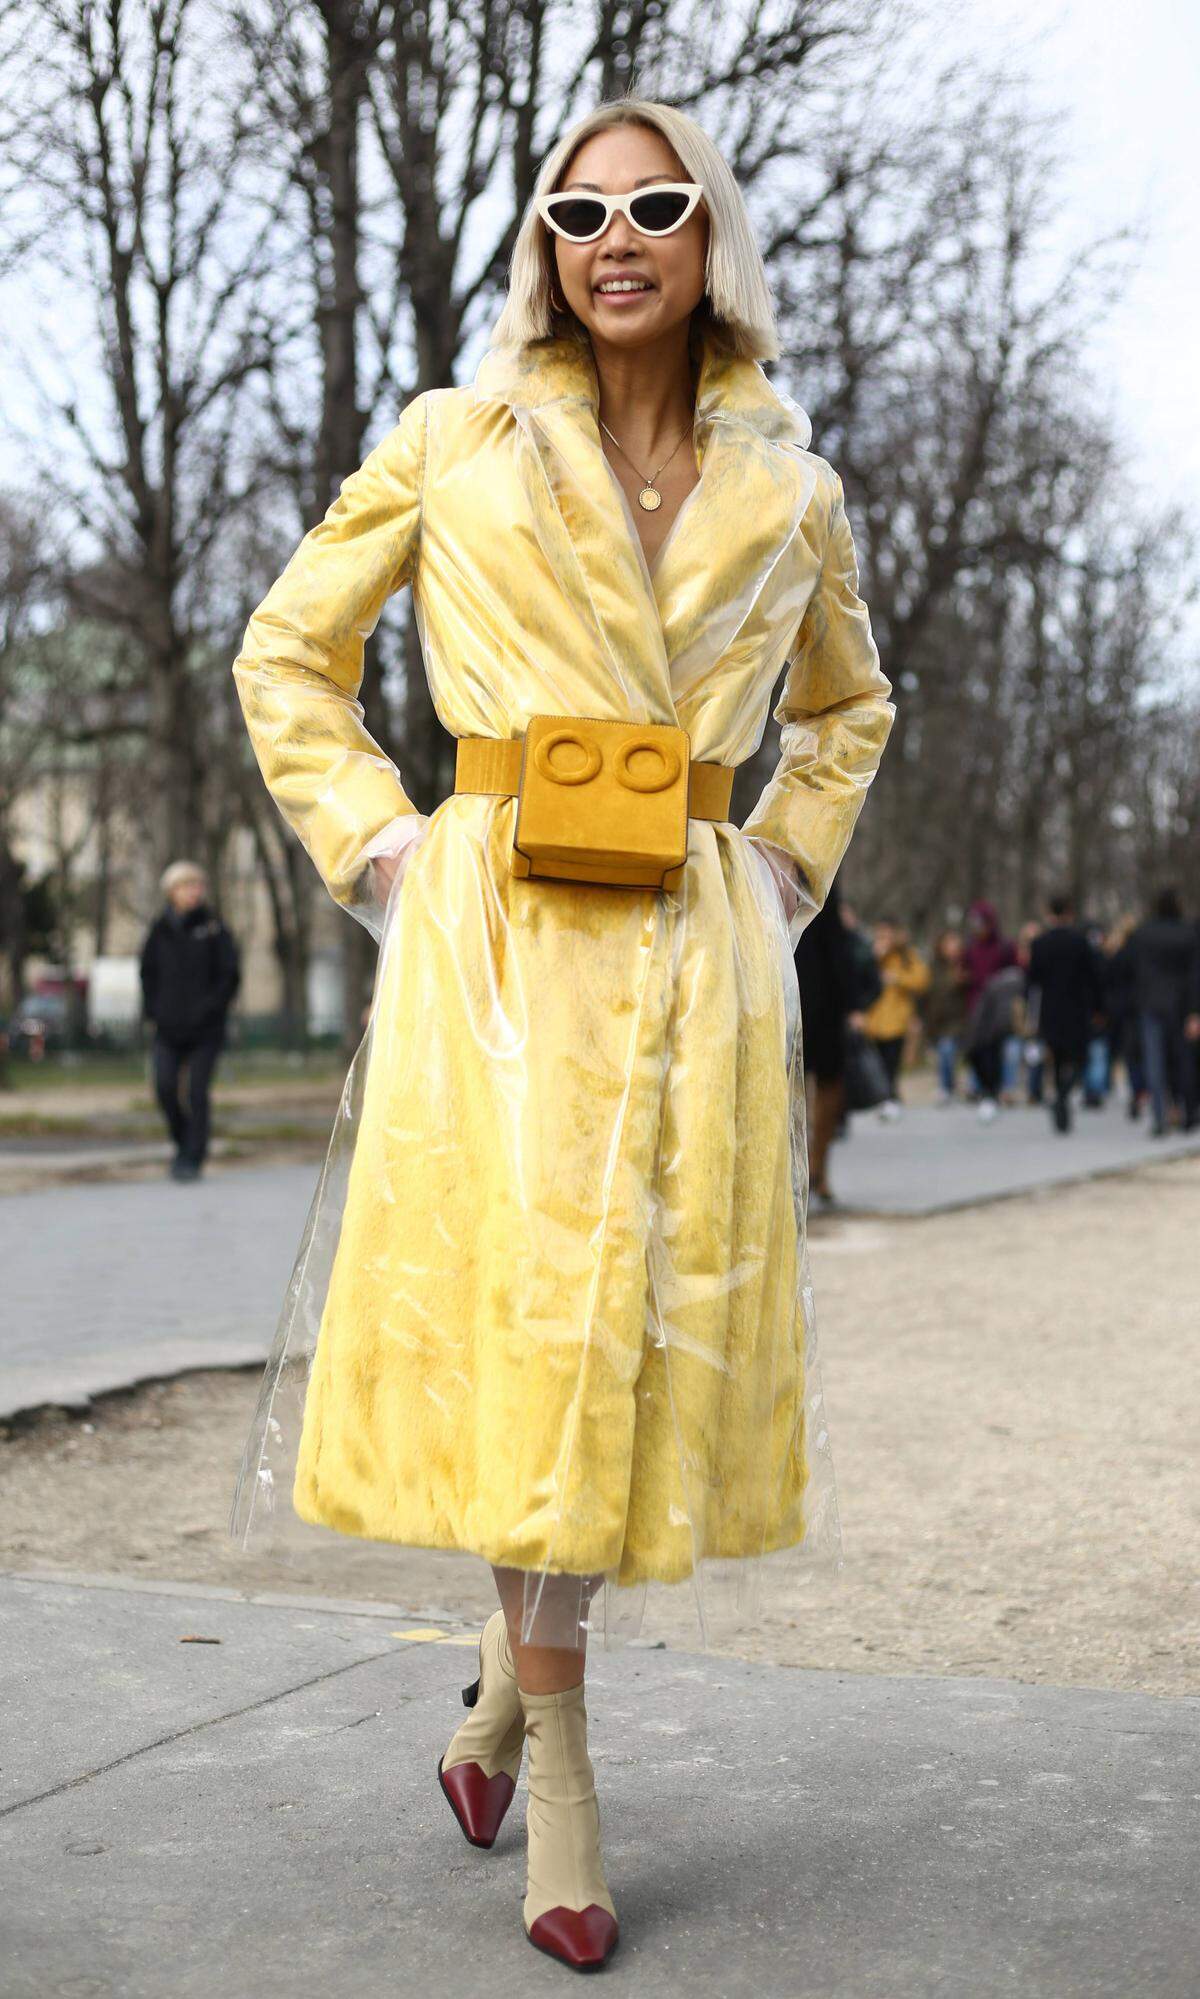 Diese Dame vereint gekonnt mehrere Trends in ihrem Look: Gelb, Plastik, Strumpfboots und das gute Stück um die Taille bringt Form in das Outfit.